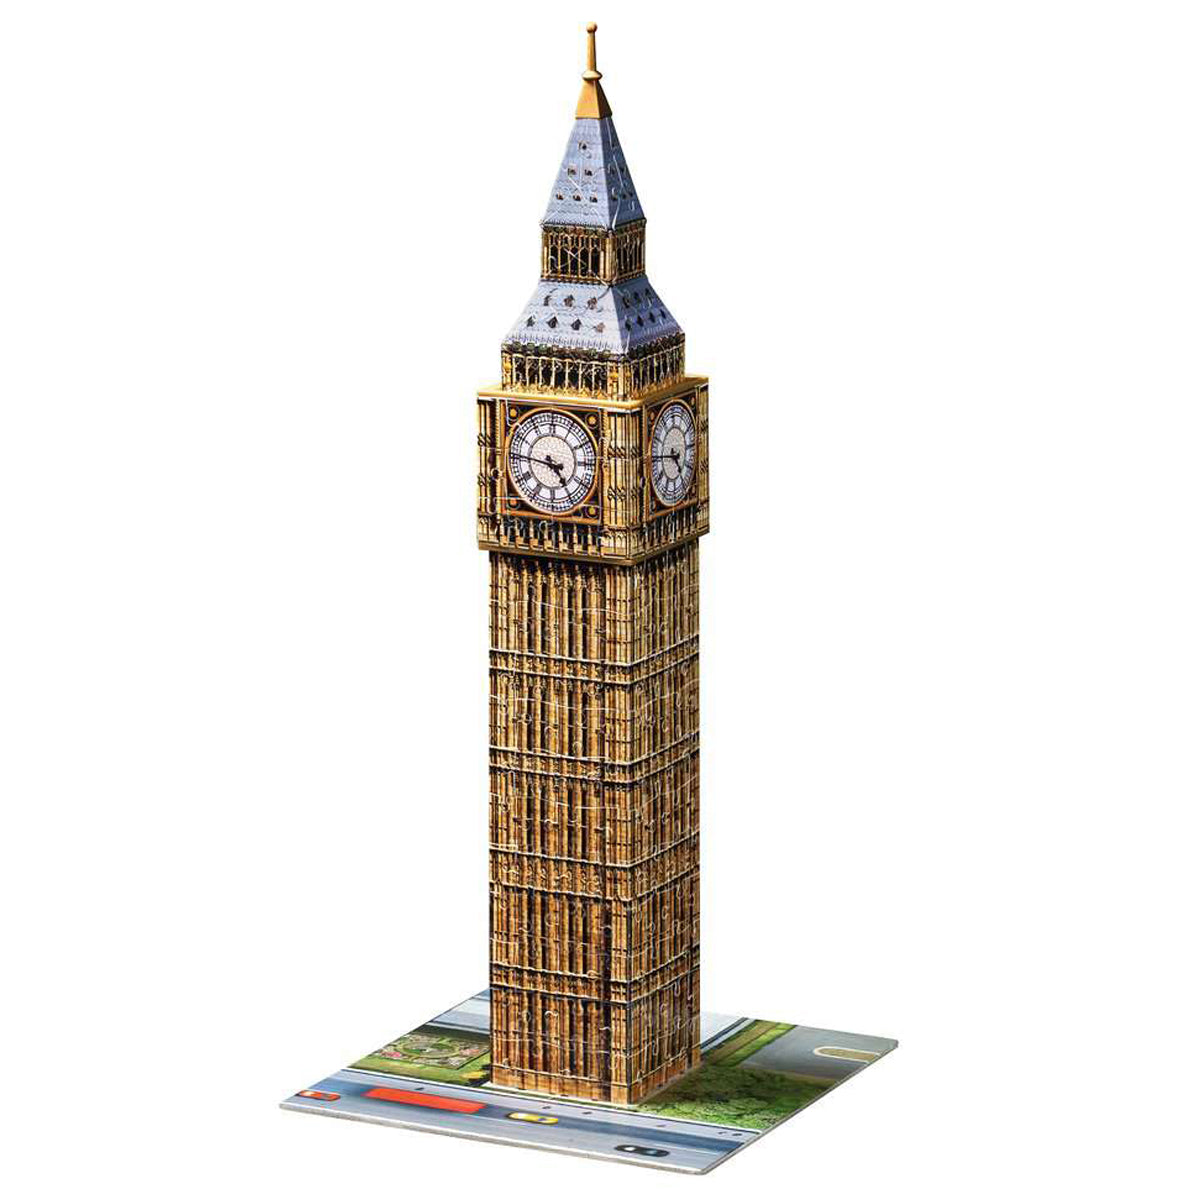 Big Ben 3D Jigsaw Puzzle - 216 Piece - assembled